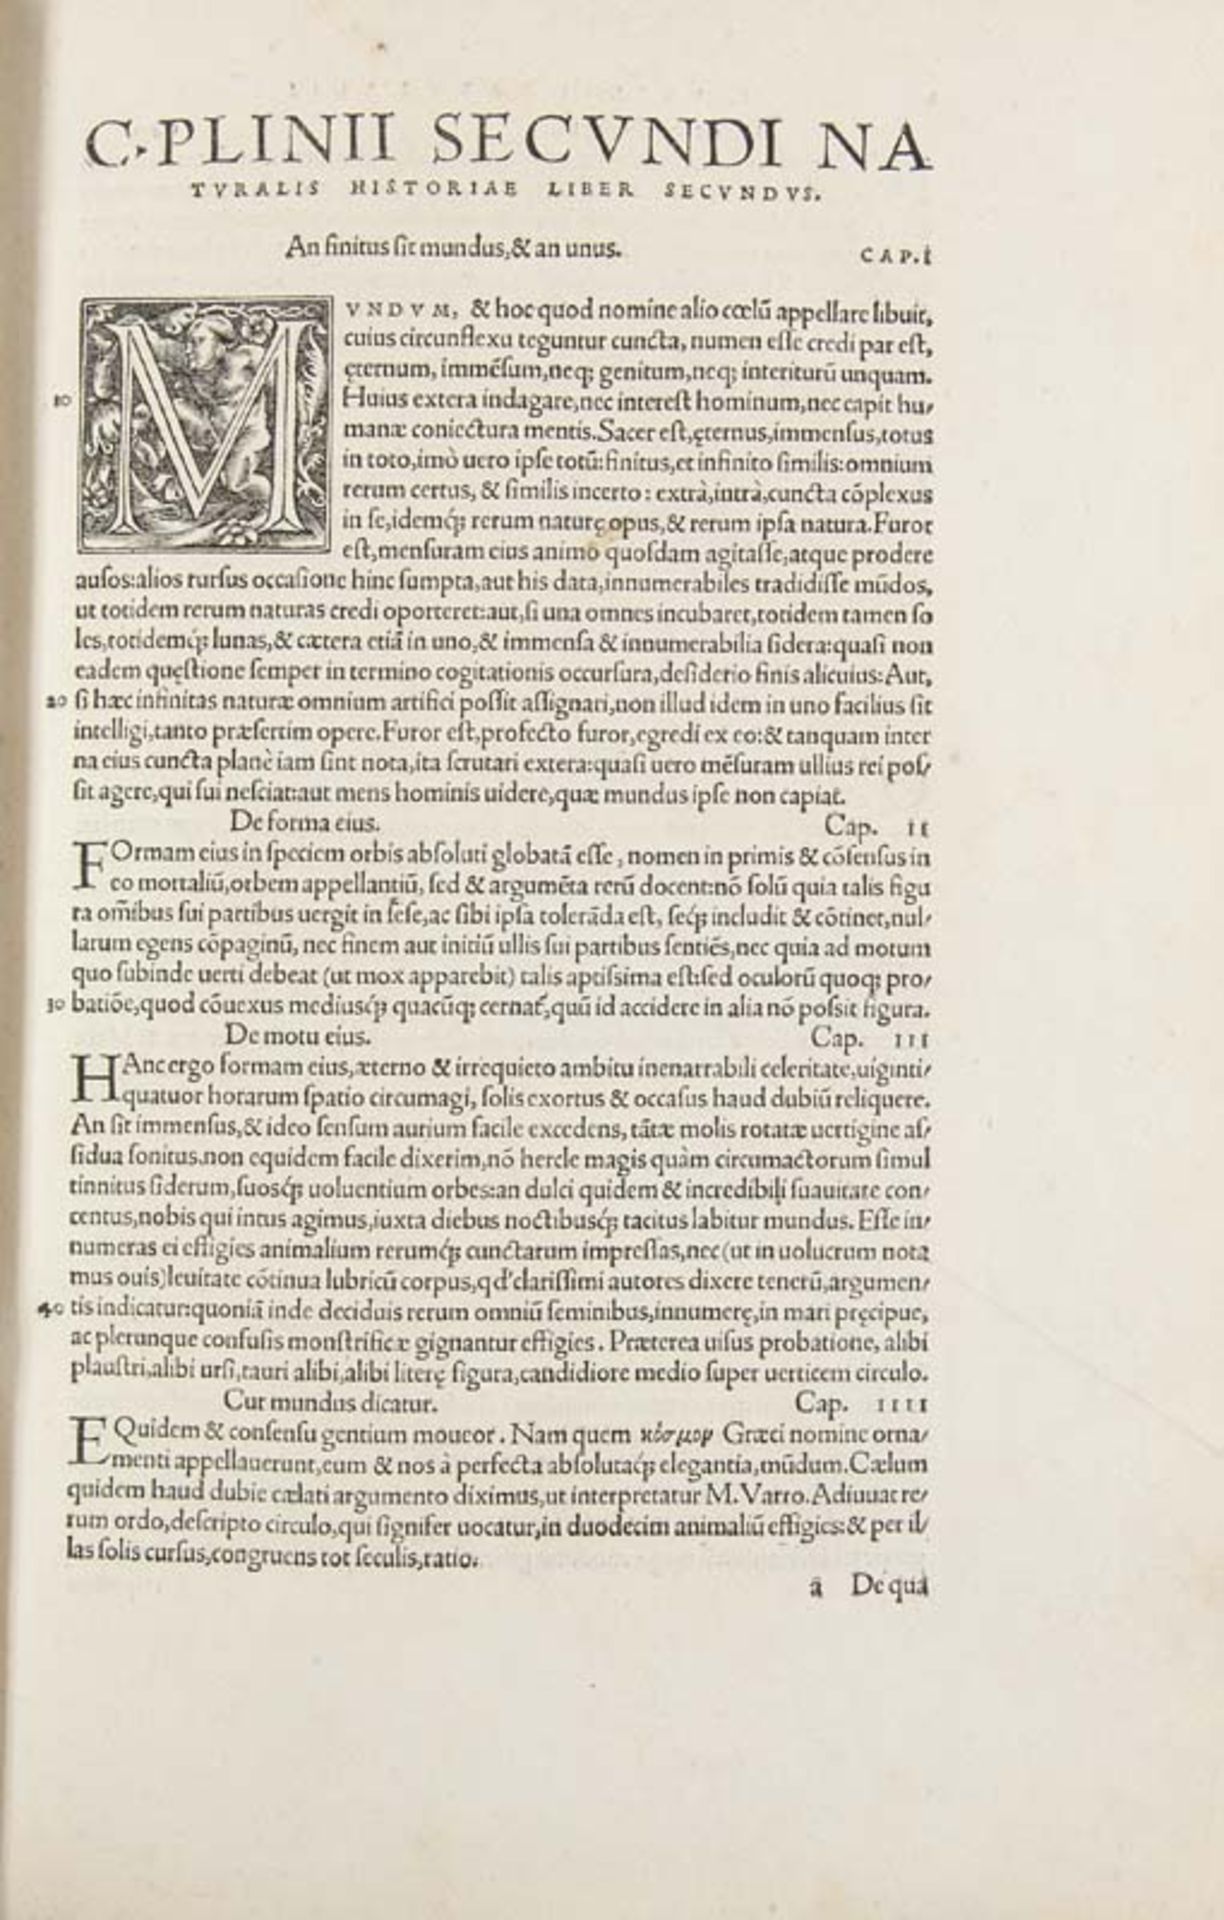 Plinius Secundus, C.(aius (d.Ä.)). Historia mundi, denuo emendata. Snon paucis locis ex diligenti ad